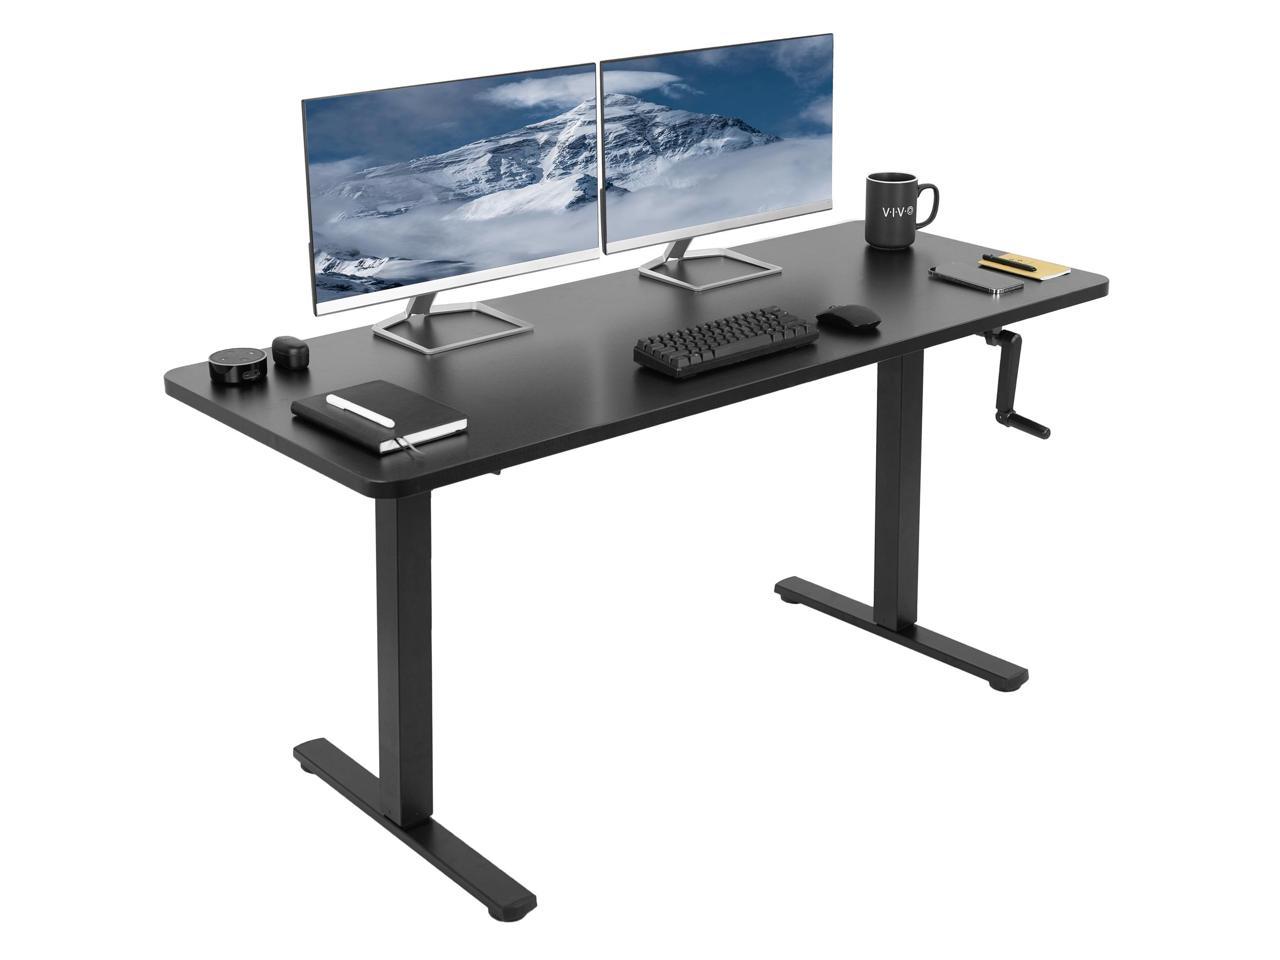 Black Frame VIVO Manual 43” x 24” Stand Up DeskVintage Brown Table Top 